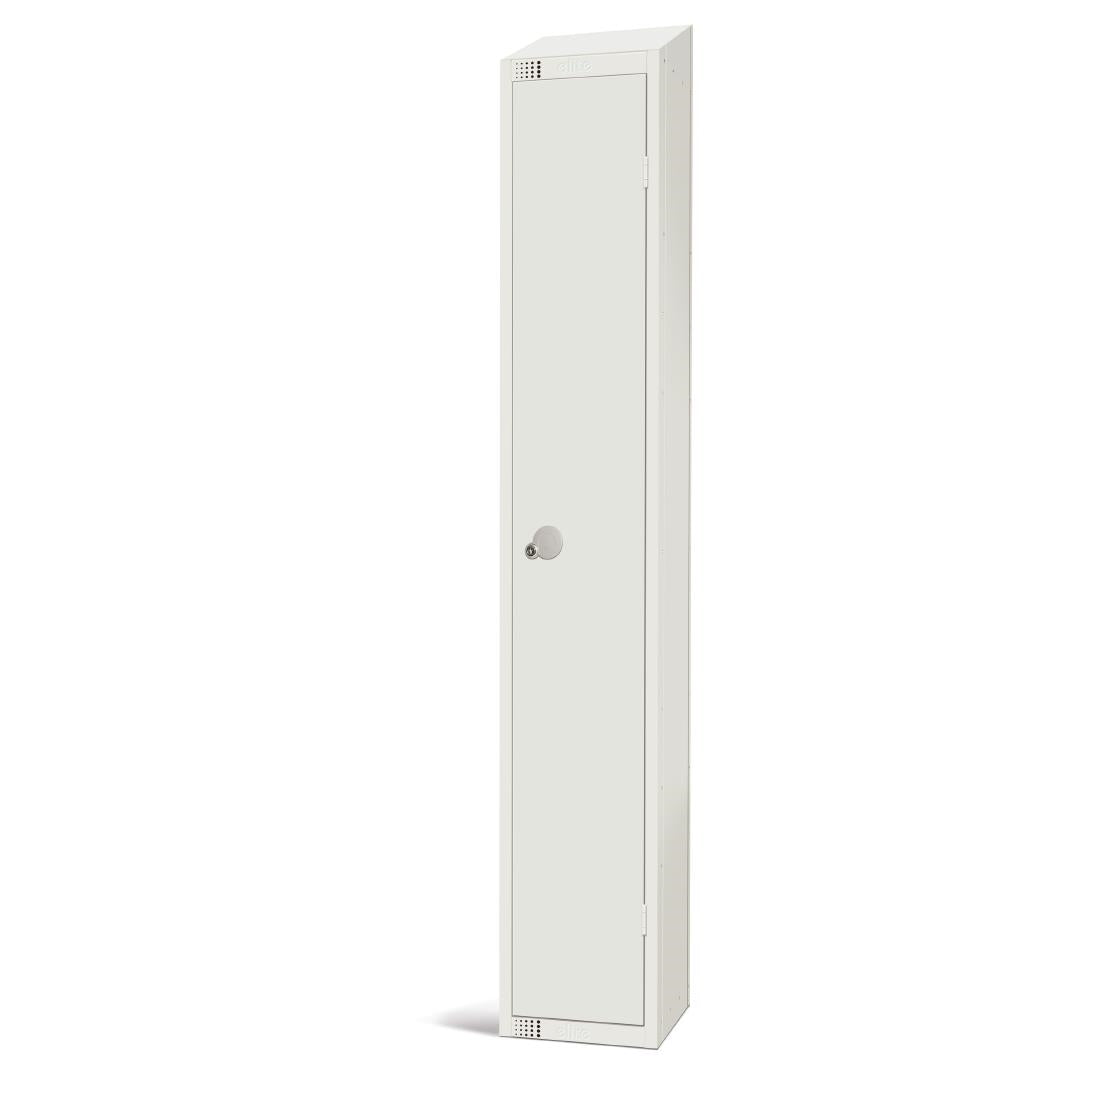 Elite Single Door Camlock Locker with Sloping Top JD Catering Equipment Solutions Ltd